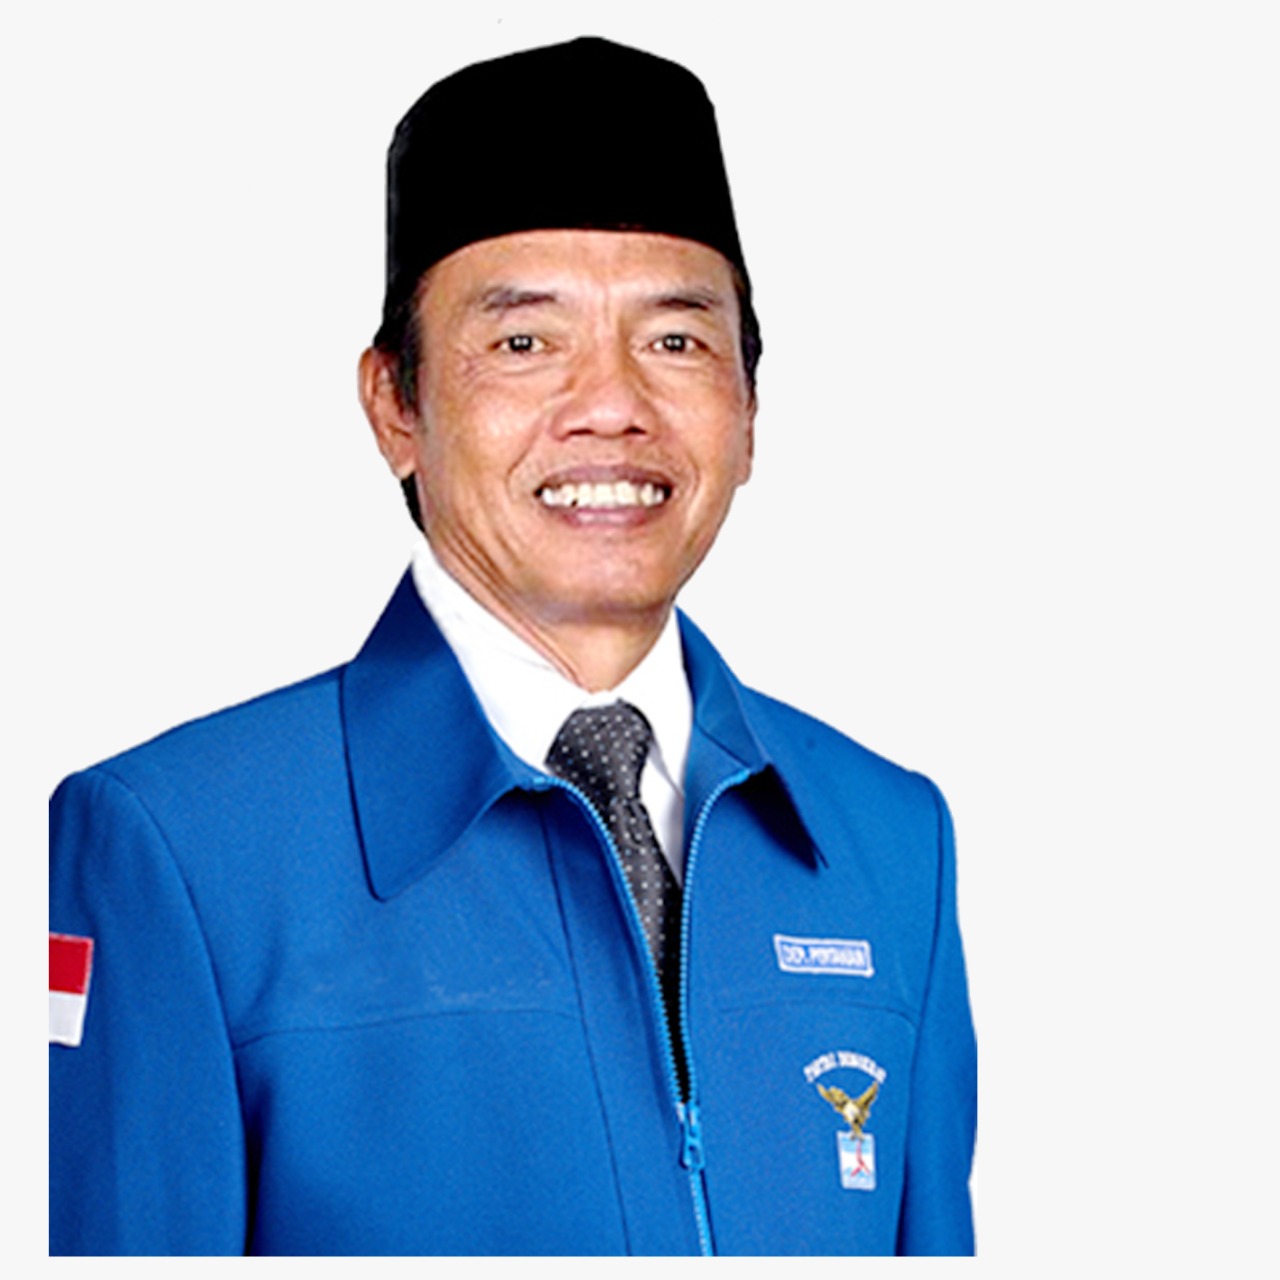 Anggota DPR RI Komisi IV Fraksi Partai Demokrat Daerah Pemilihan (Dapil)l Kalteng, Bambang Purwanto,S.ST.,M.H